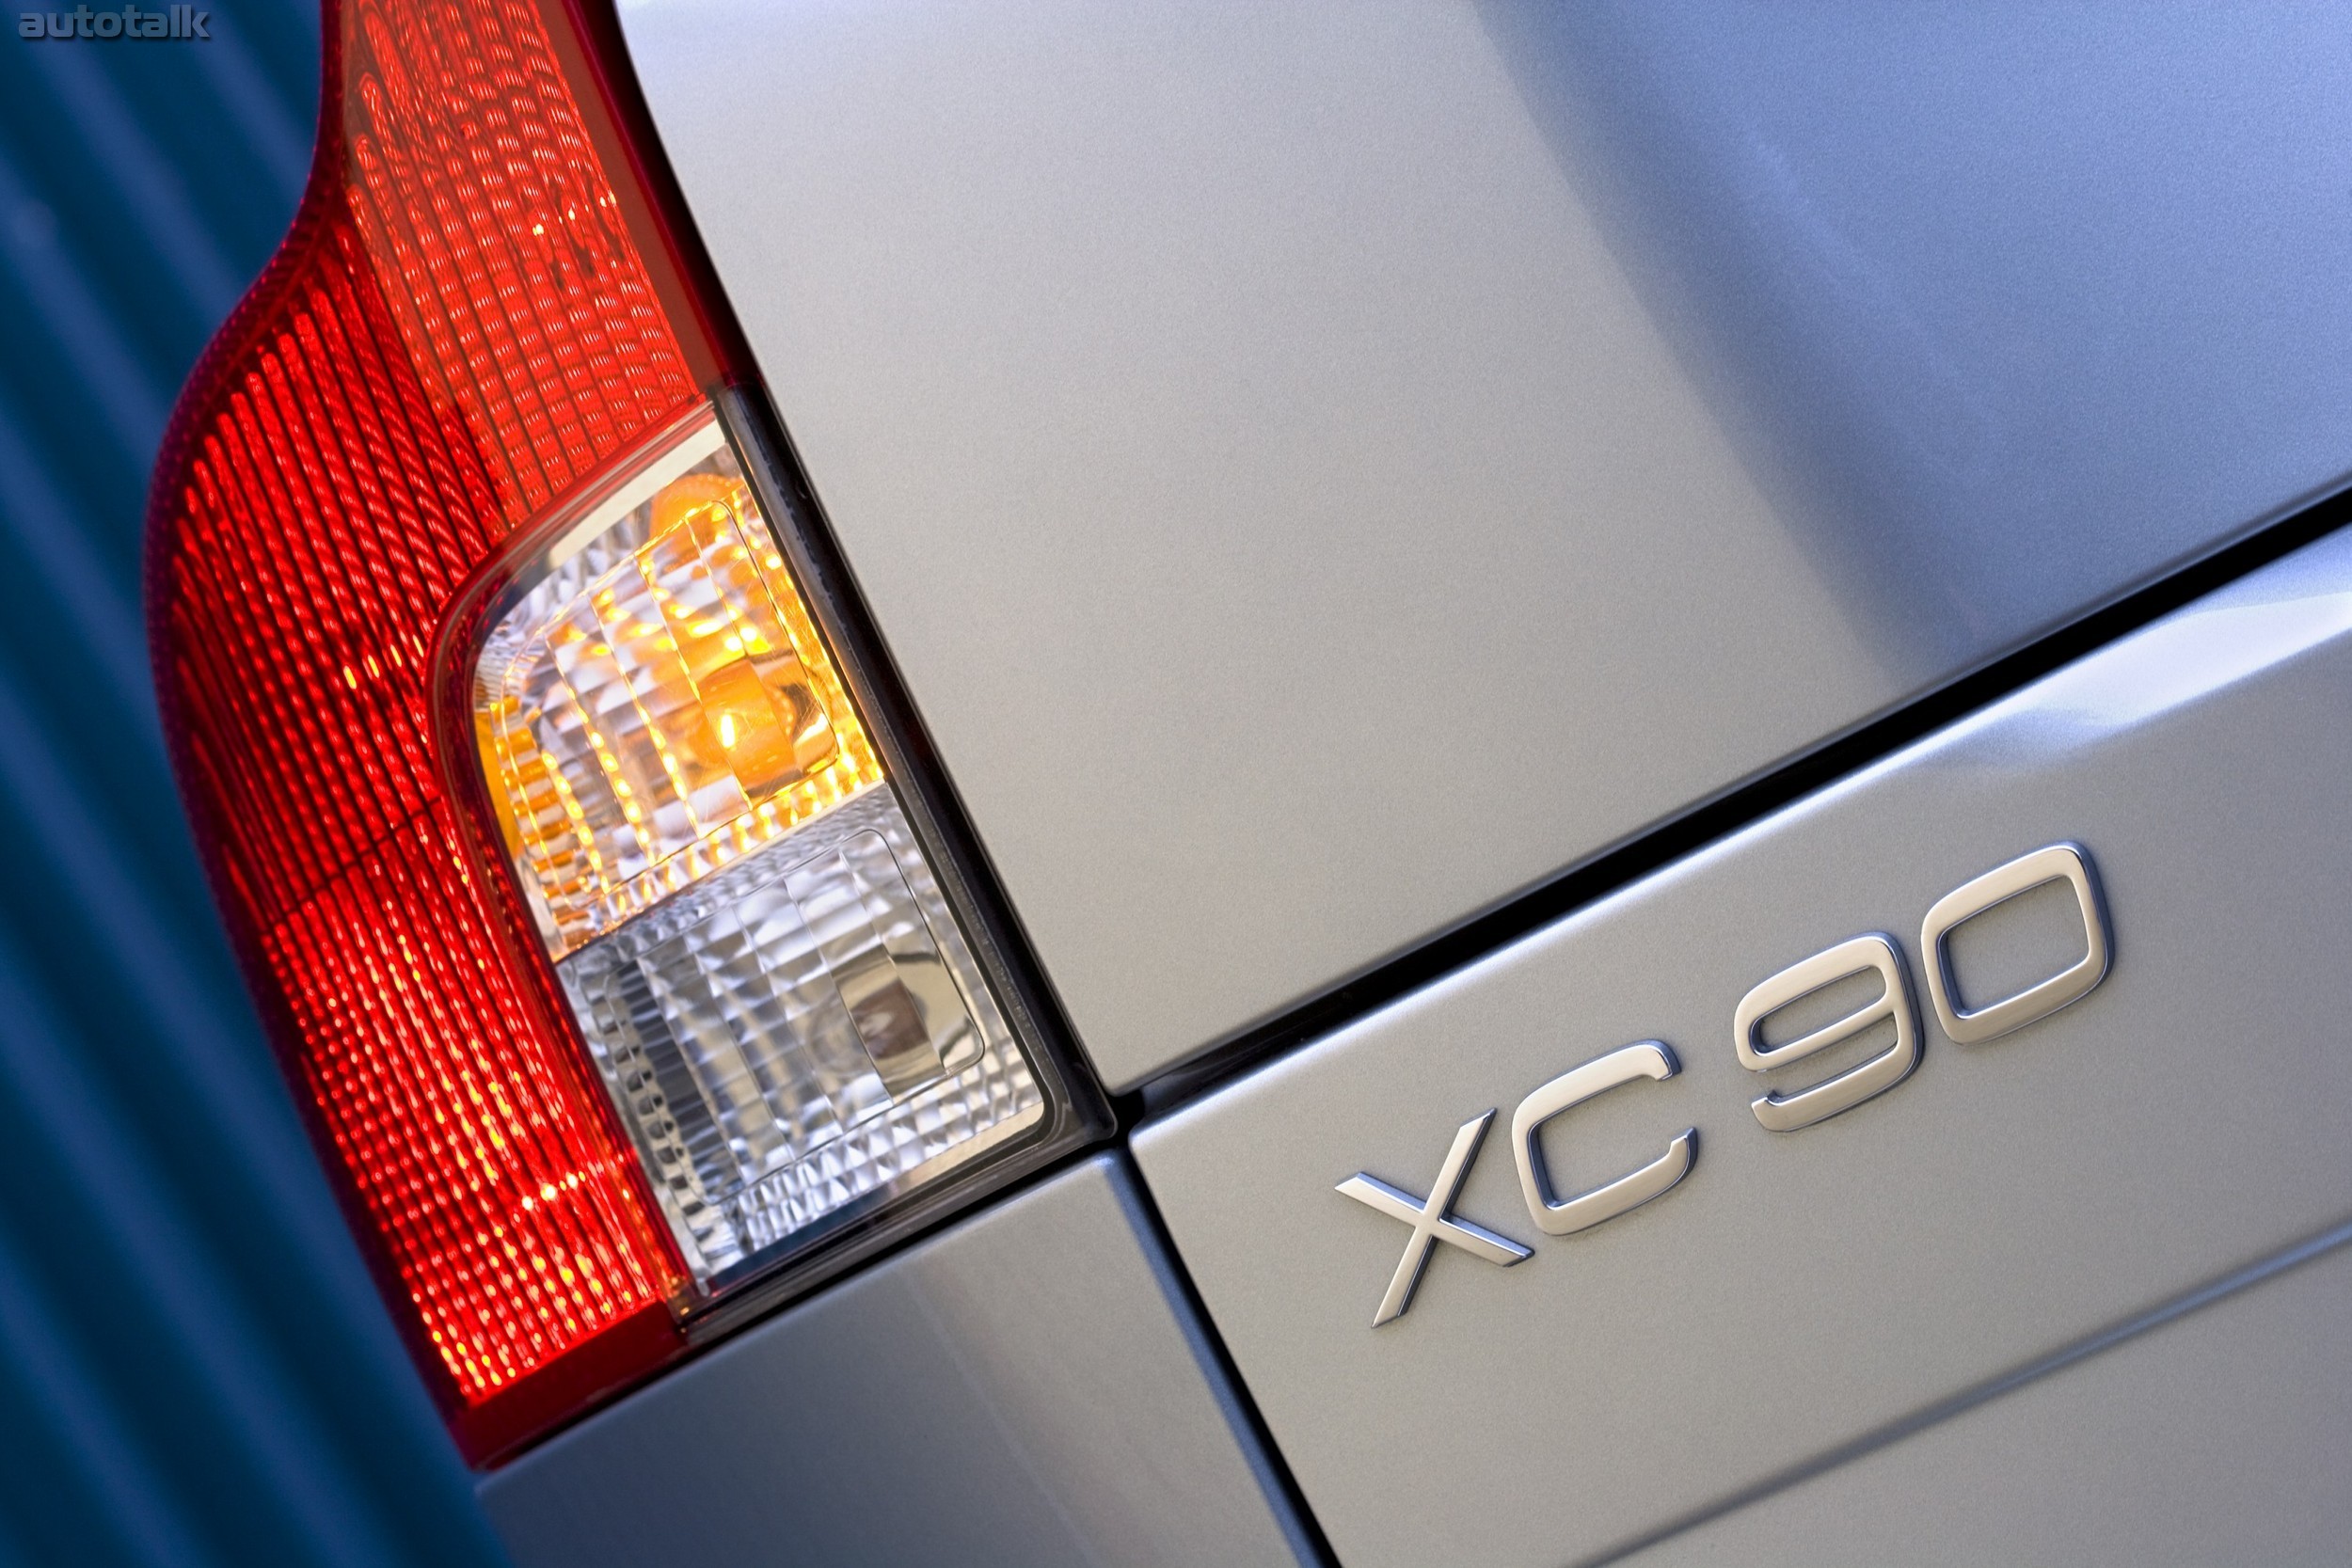 2008 Volvo XC90